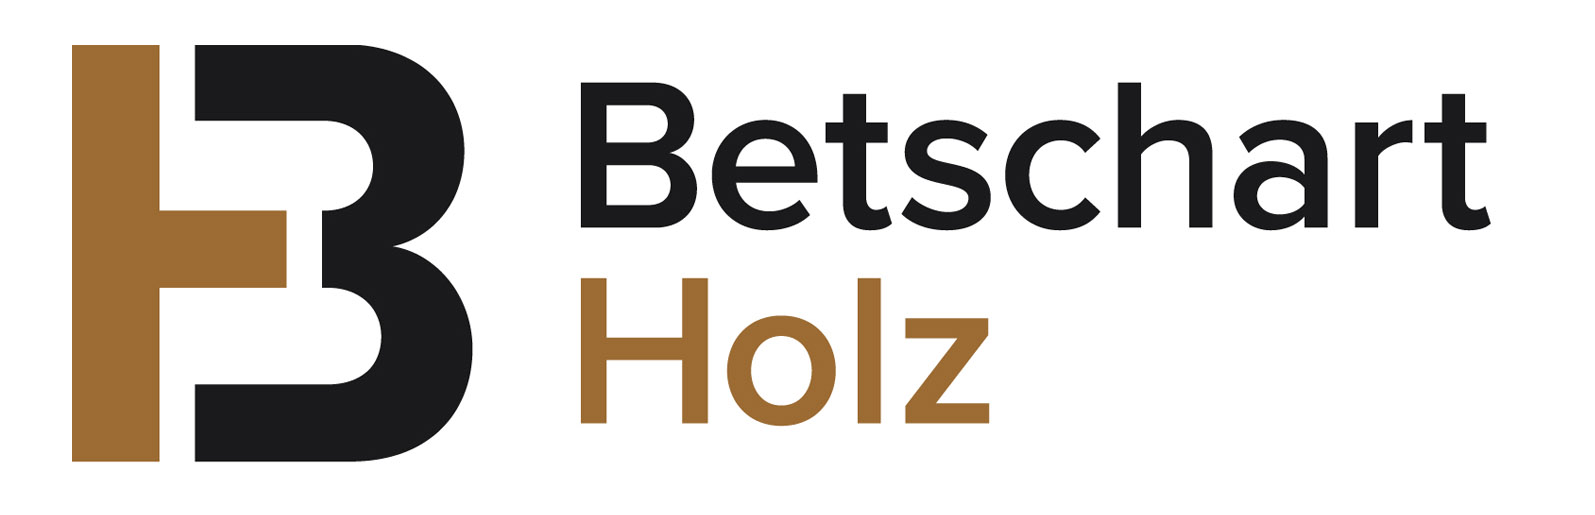  BETSCHART HOLZ 